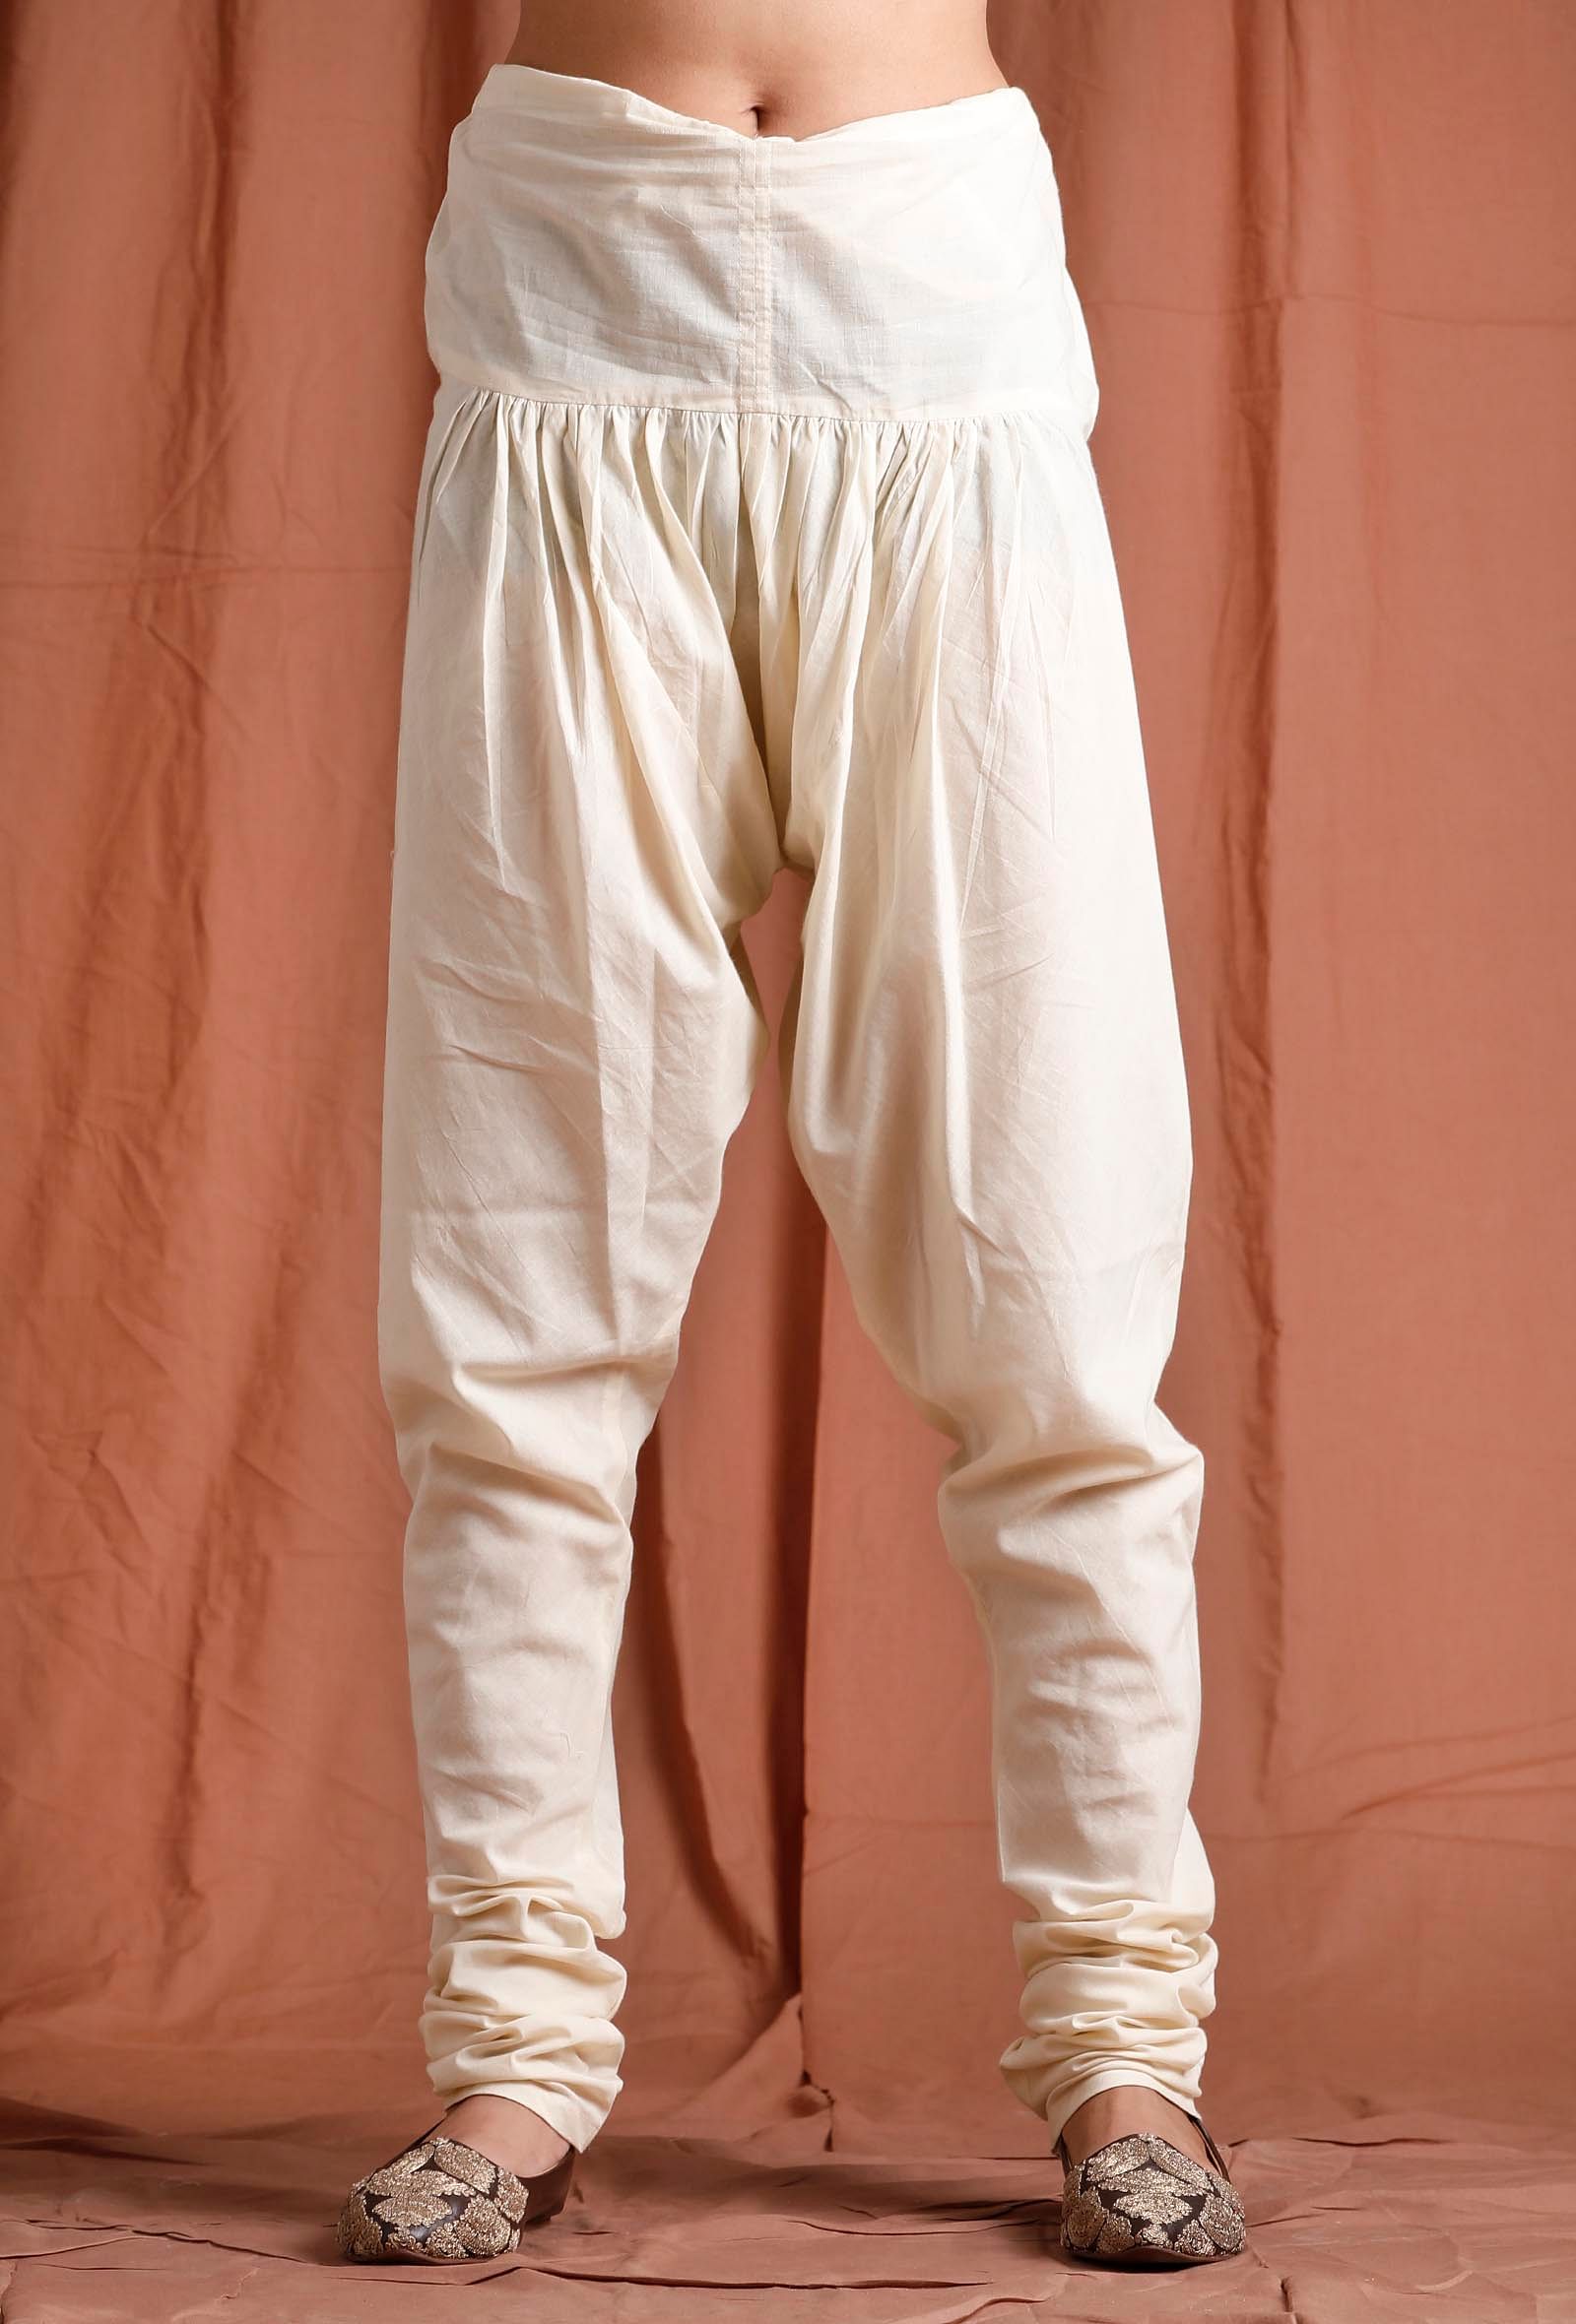 Casual Women's Churidar Pants